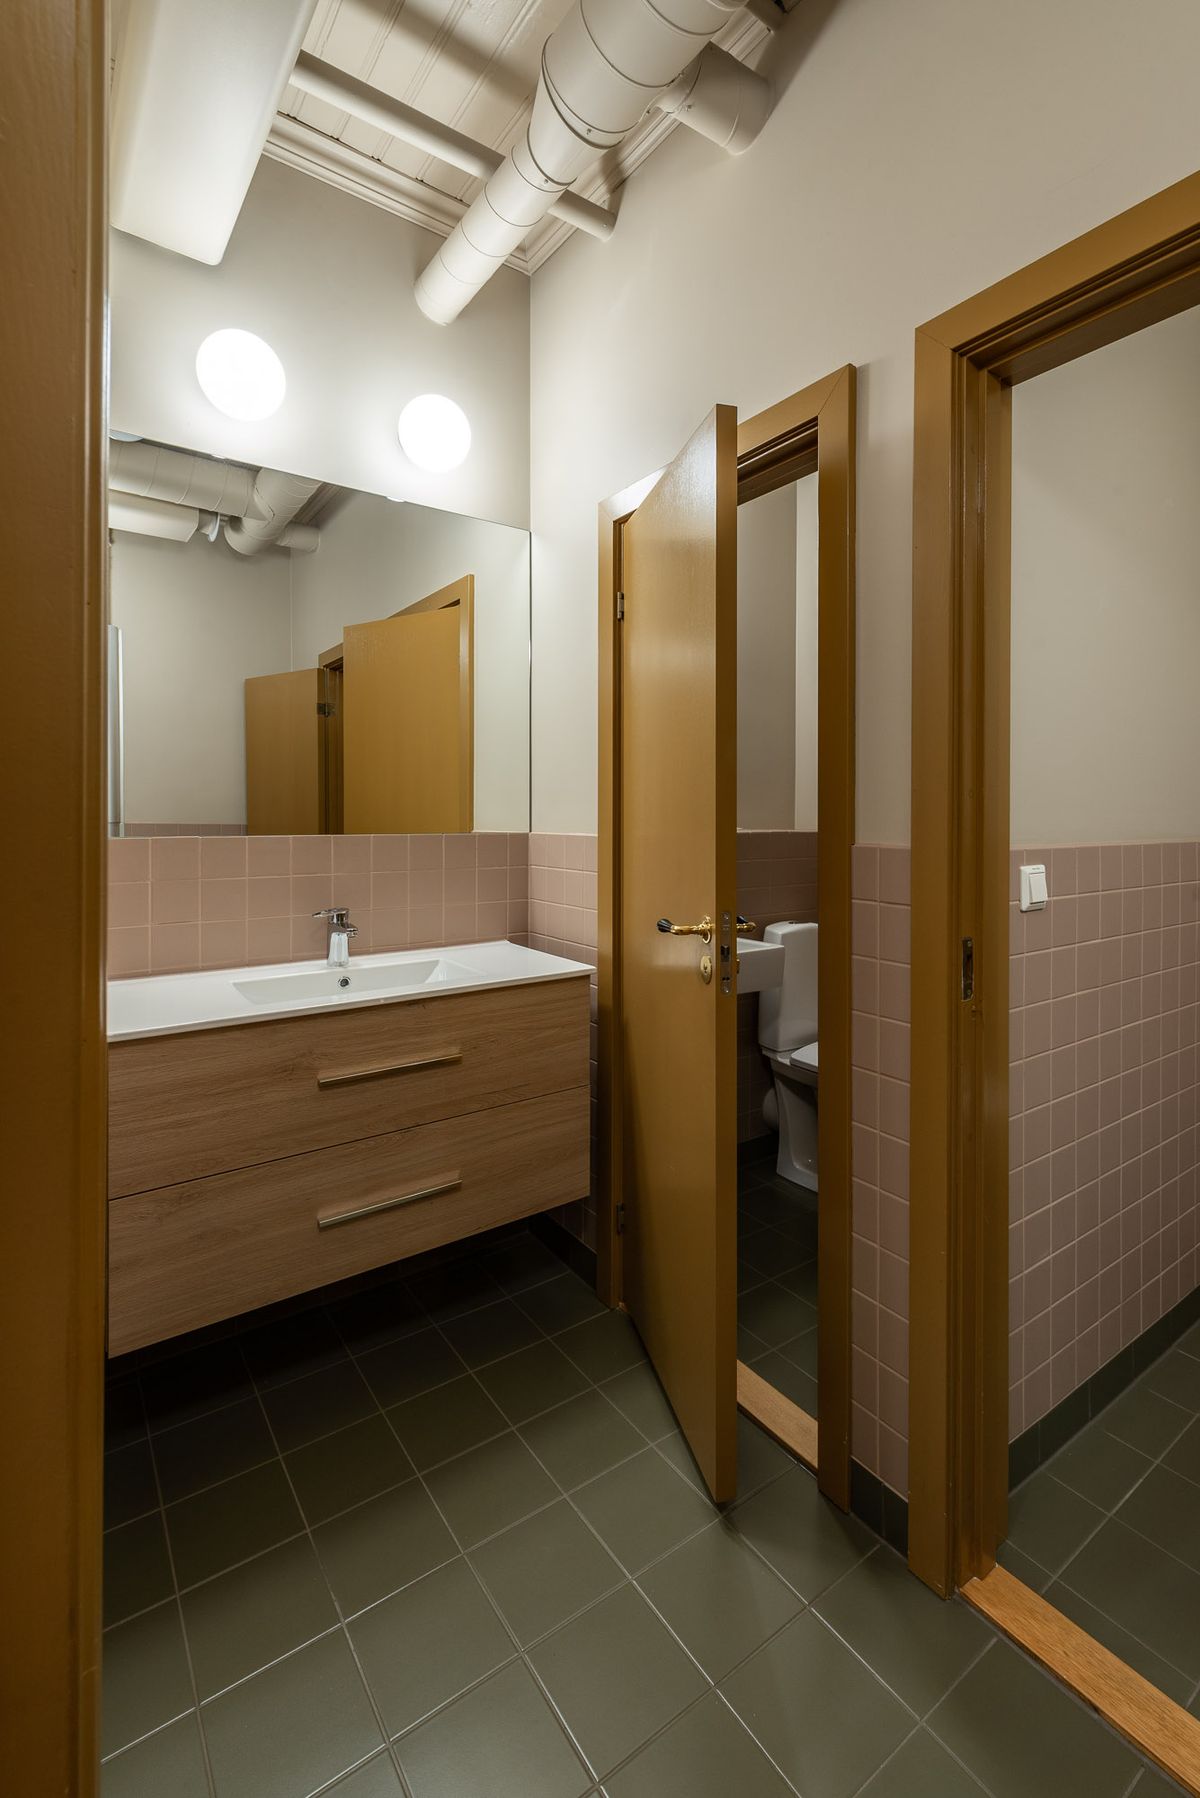 Fotografi av nye toaletter, grønn flis på gulv, rosa flis på halv vegg og oker dører.